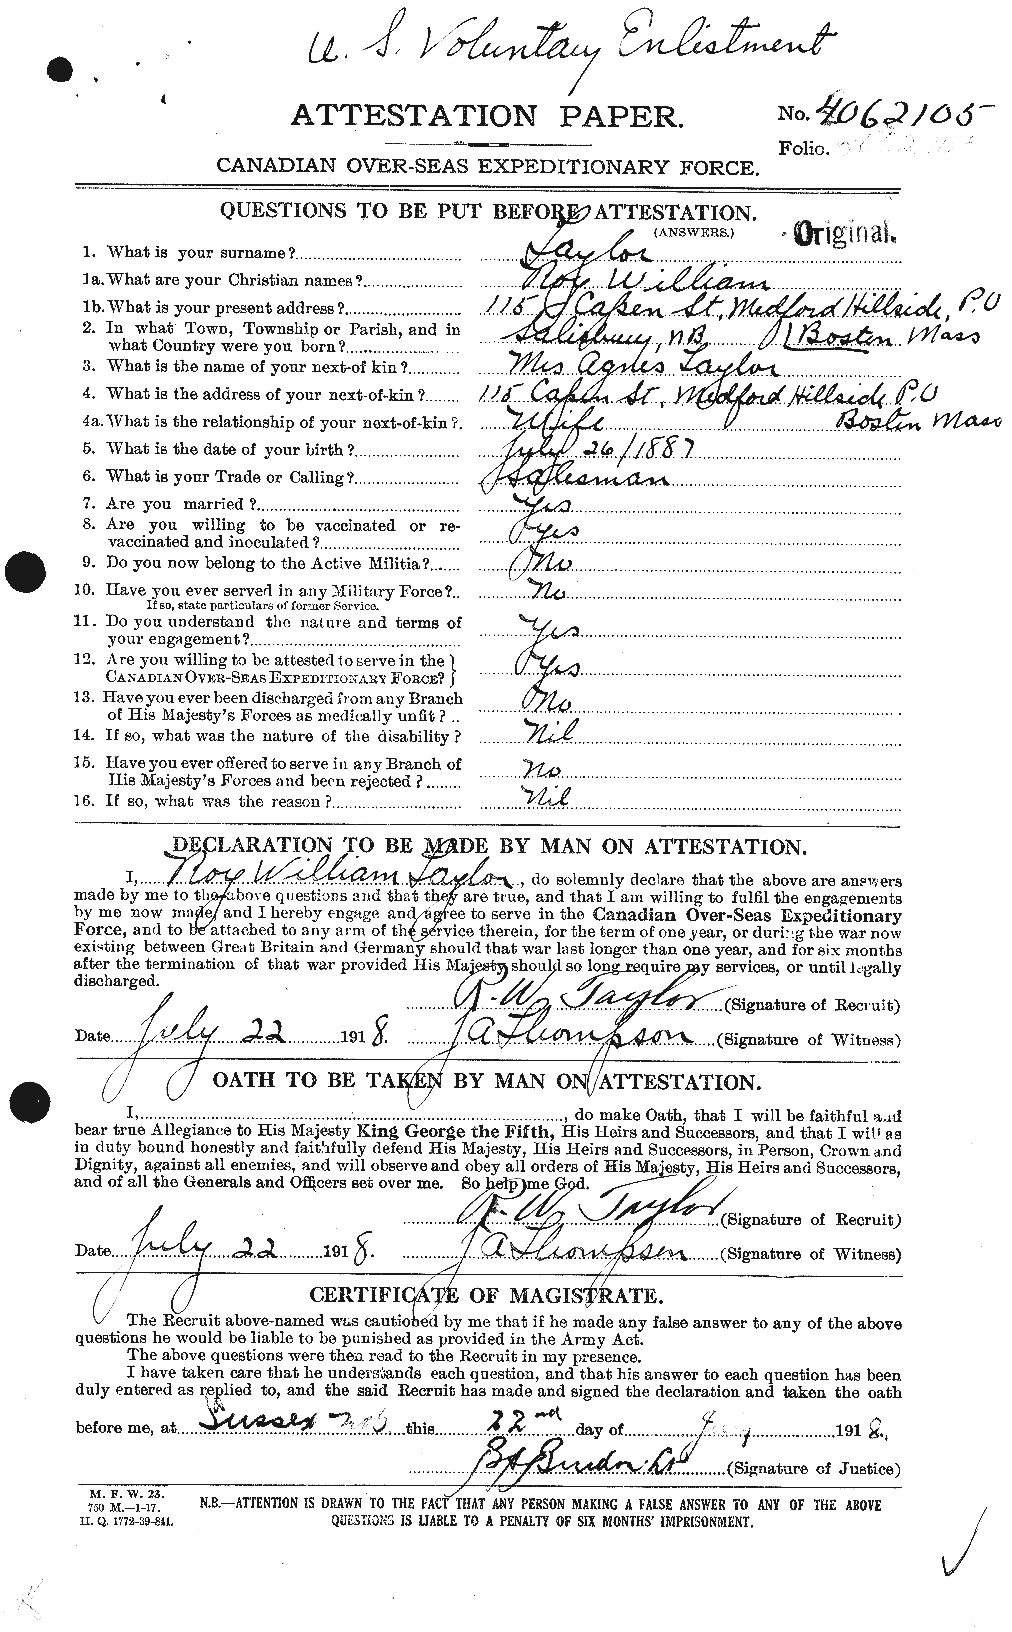 Dossiers du Personnel de la Première Guerre mondiale - CEC 627535a